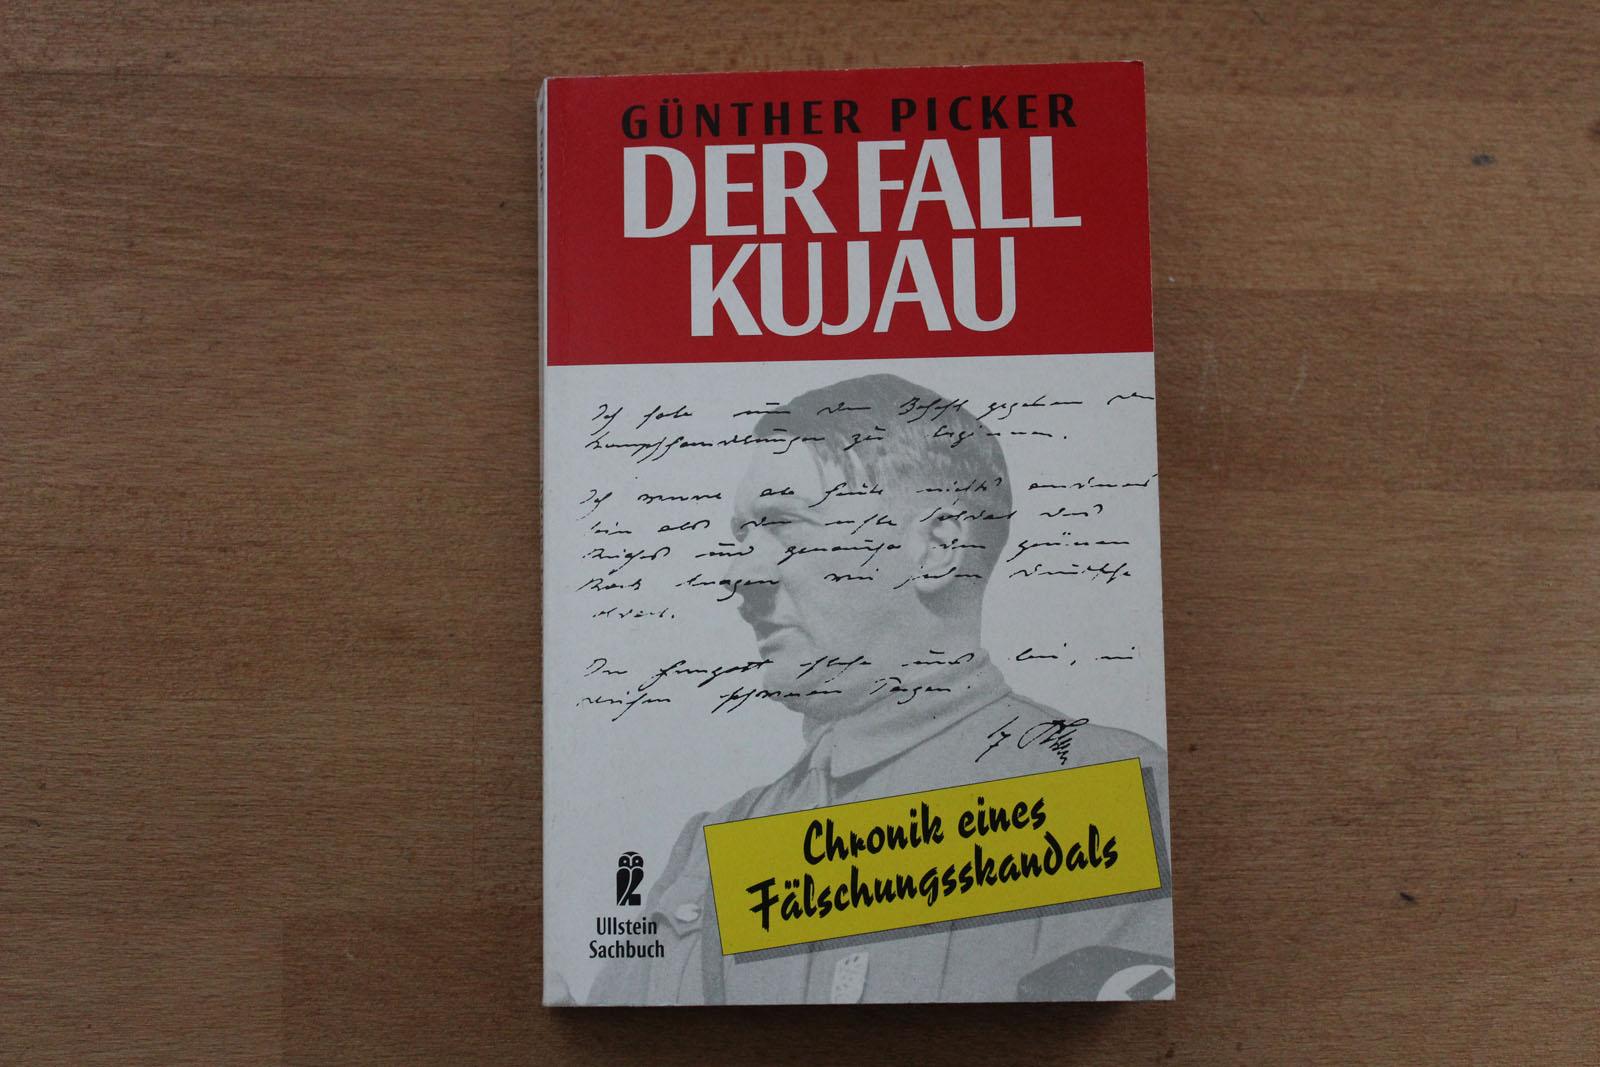 Der Fall Kujau - Chronik eines Fälschungsskandals. - Picker, Günther